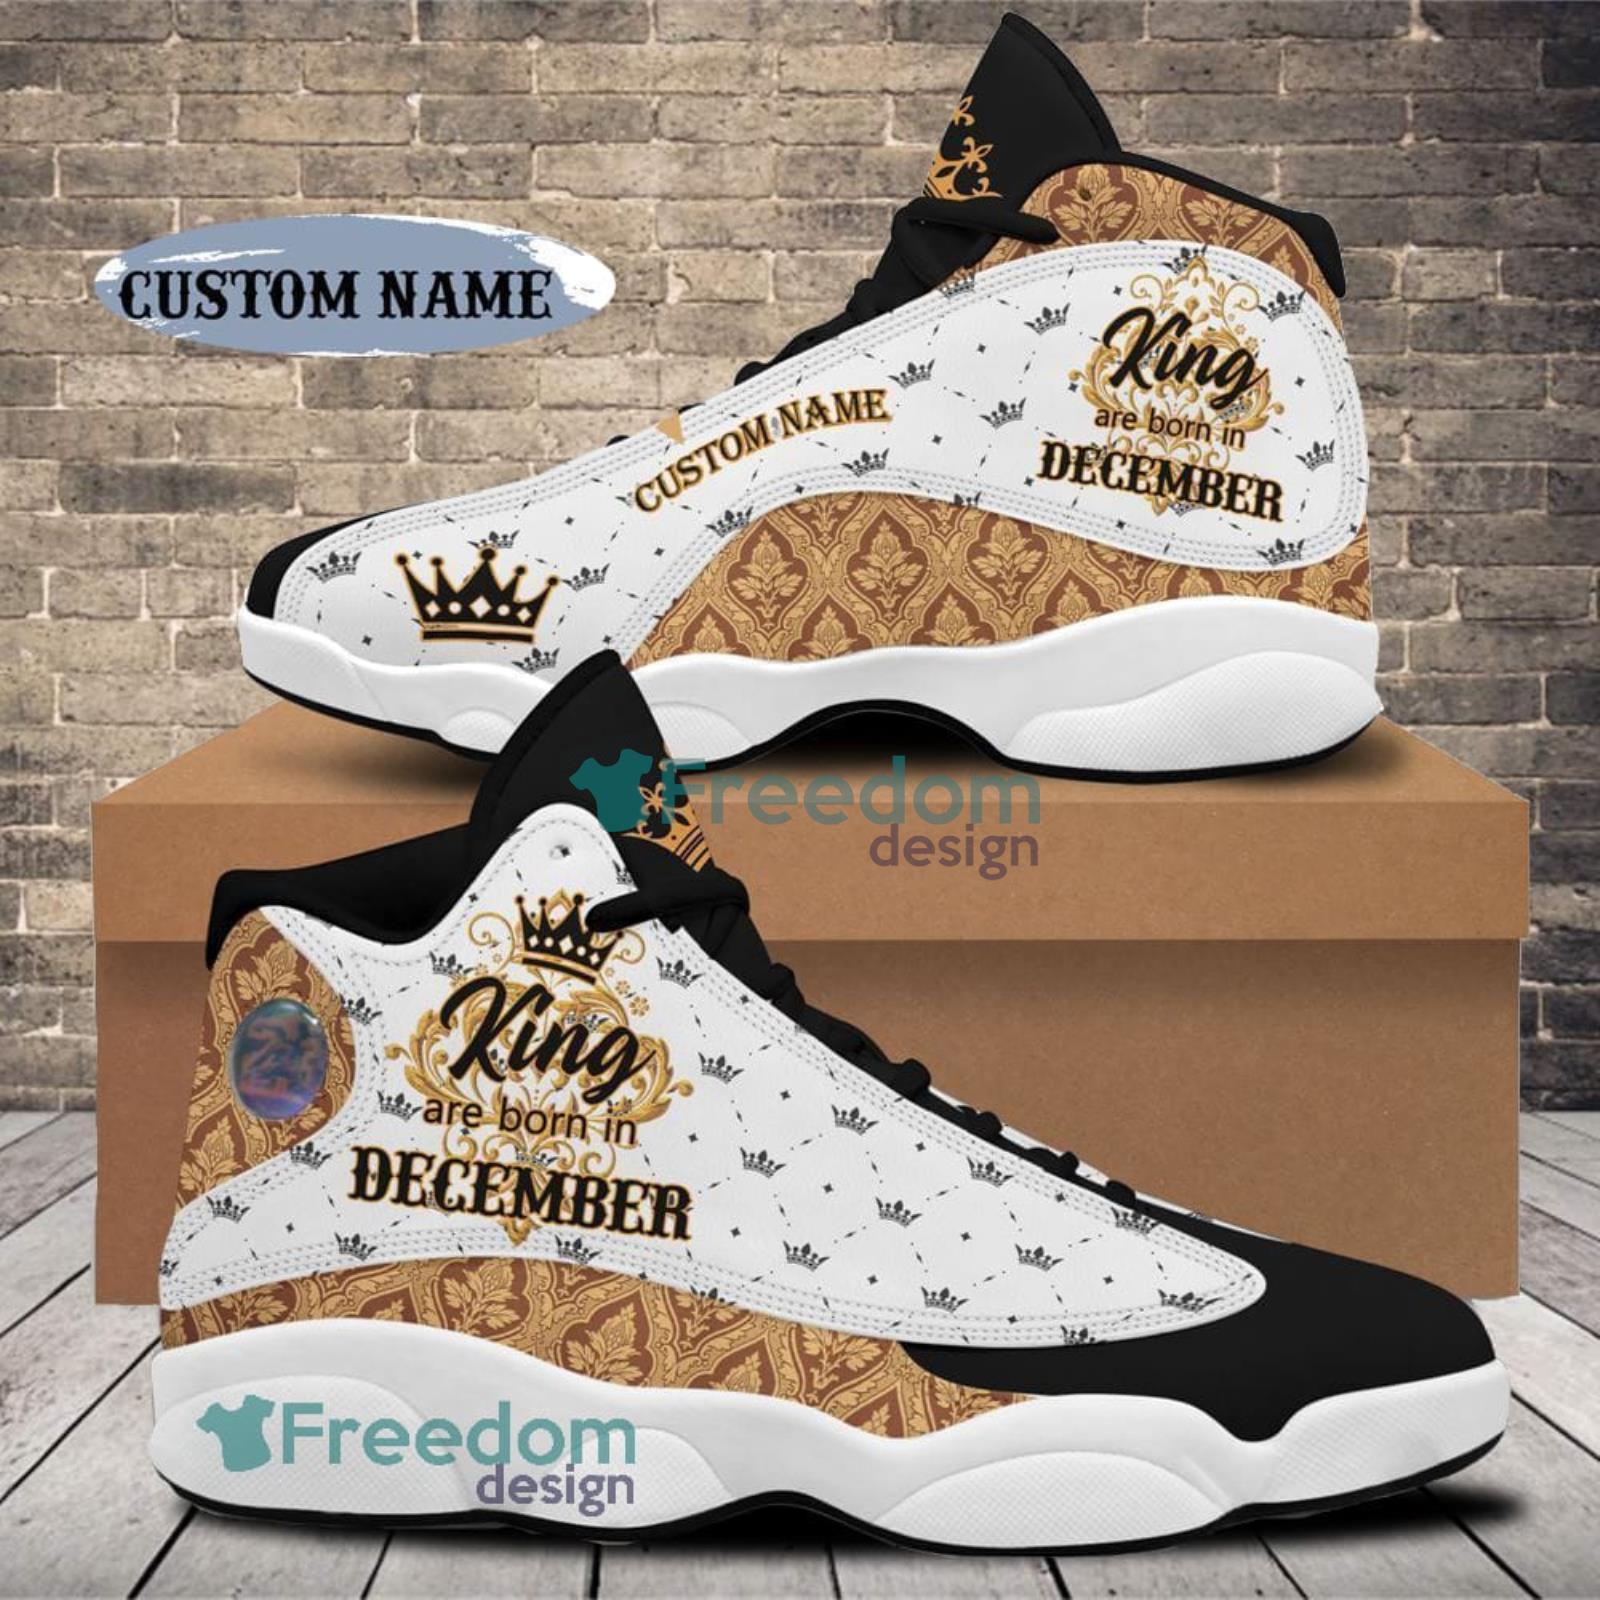 December King Air Jordan 13 Custom Name Sneakers Special Gift For